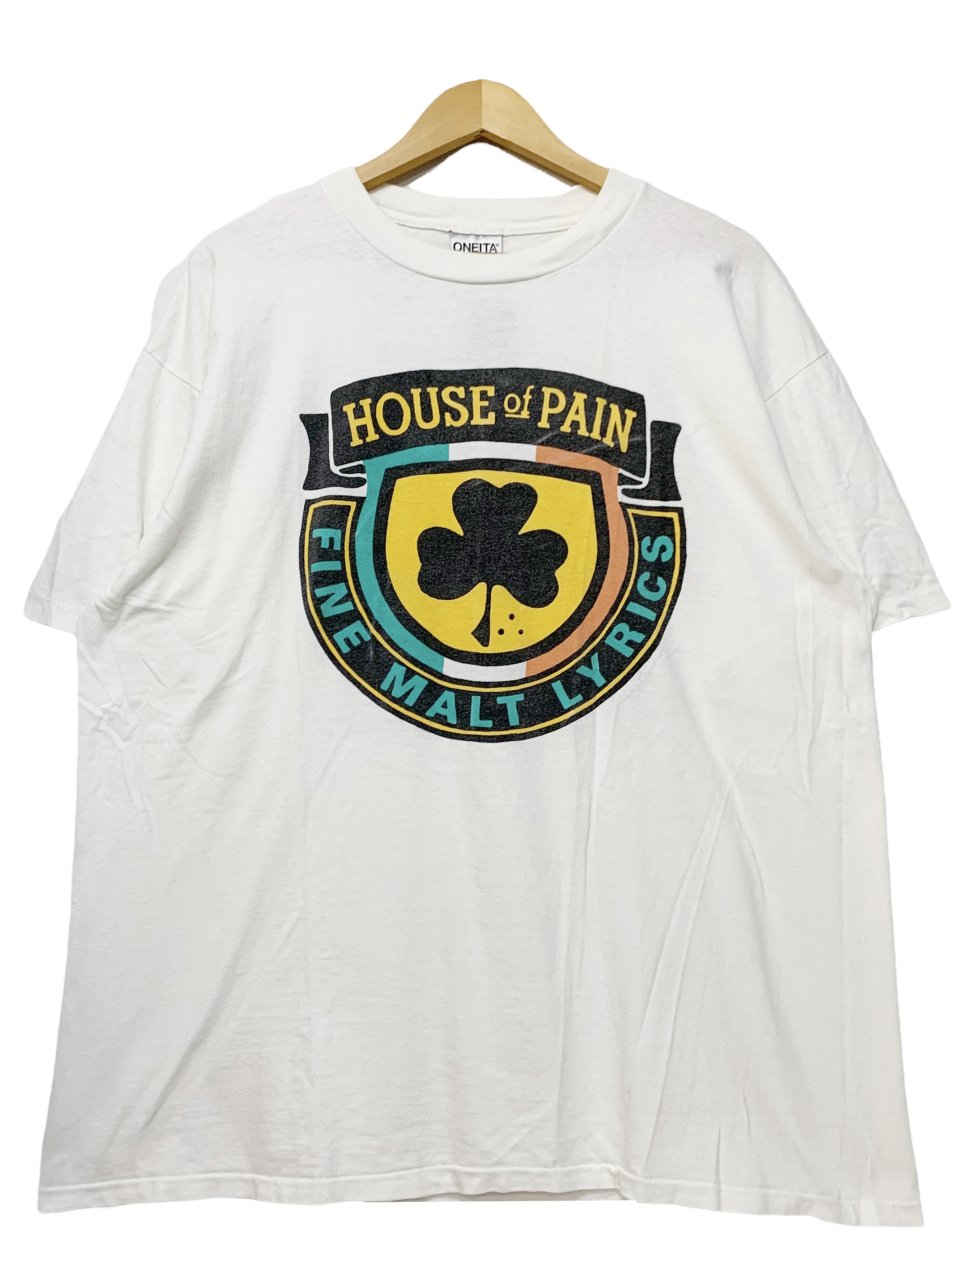 ビンテージHouse of pain Tシャツ ハウスオブペイン 93年製